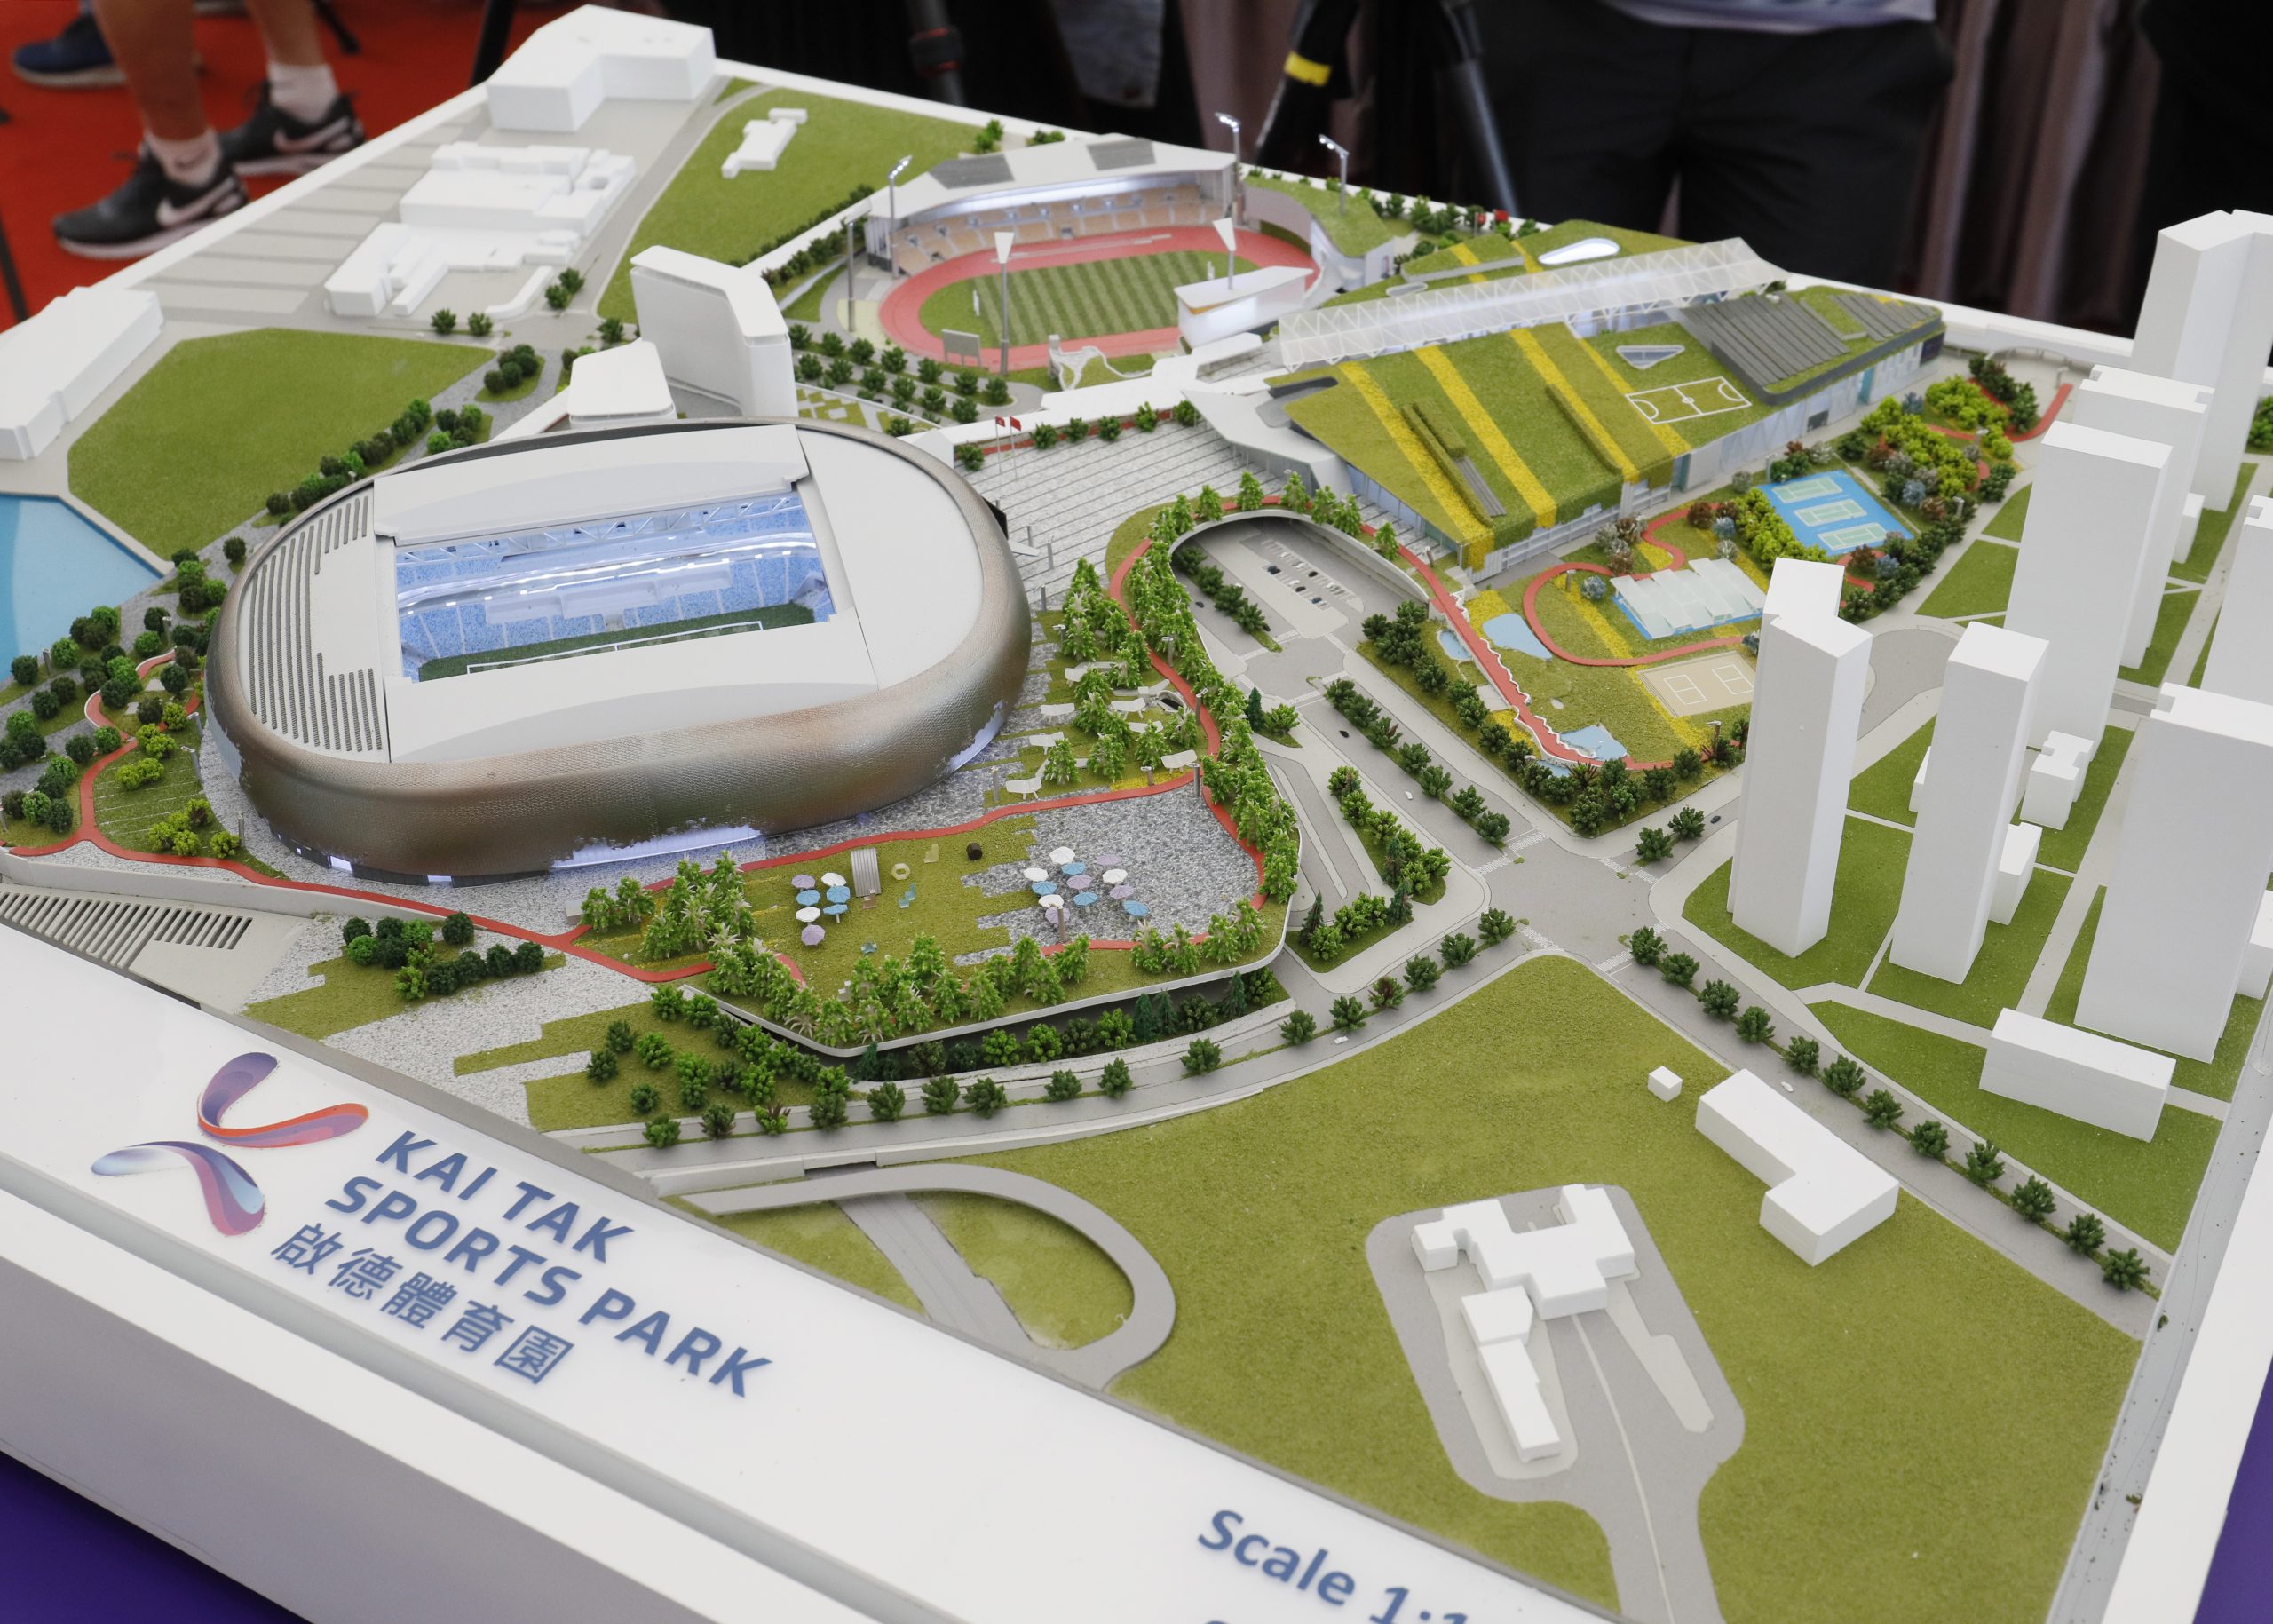 啟德體育園預計明年開幕，將成為舉辦國際級運動盛事場地。